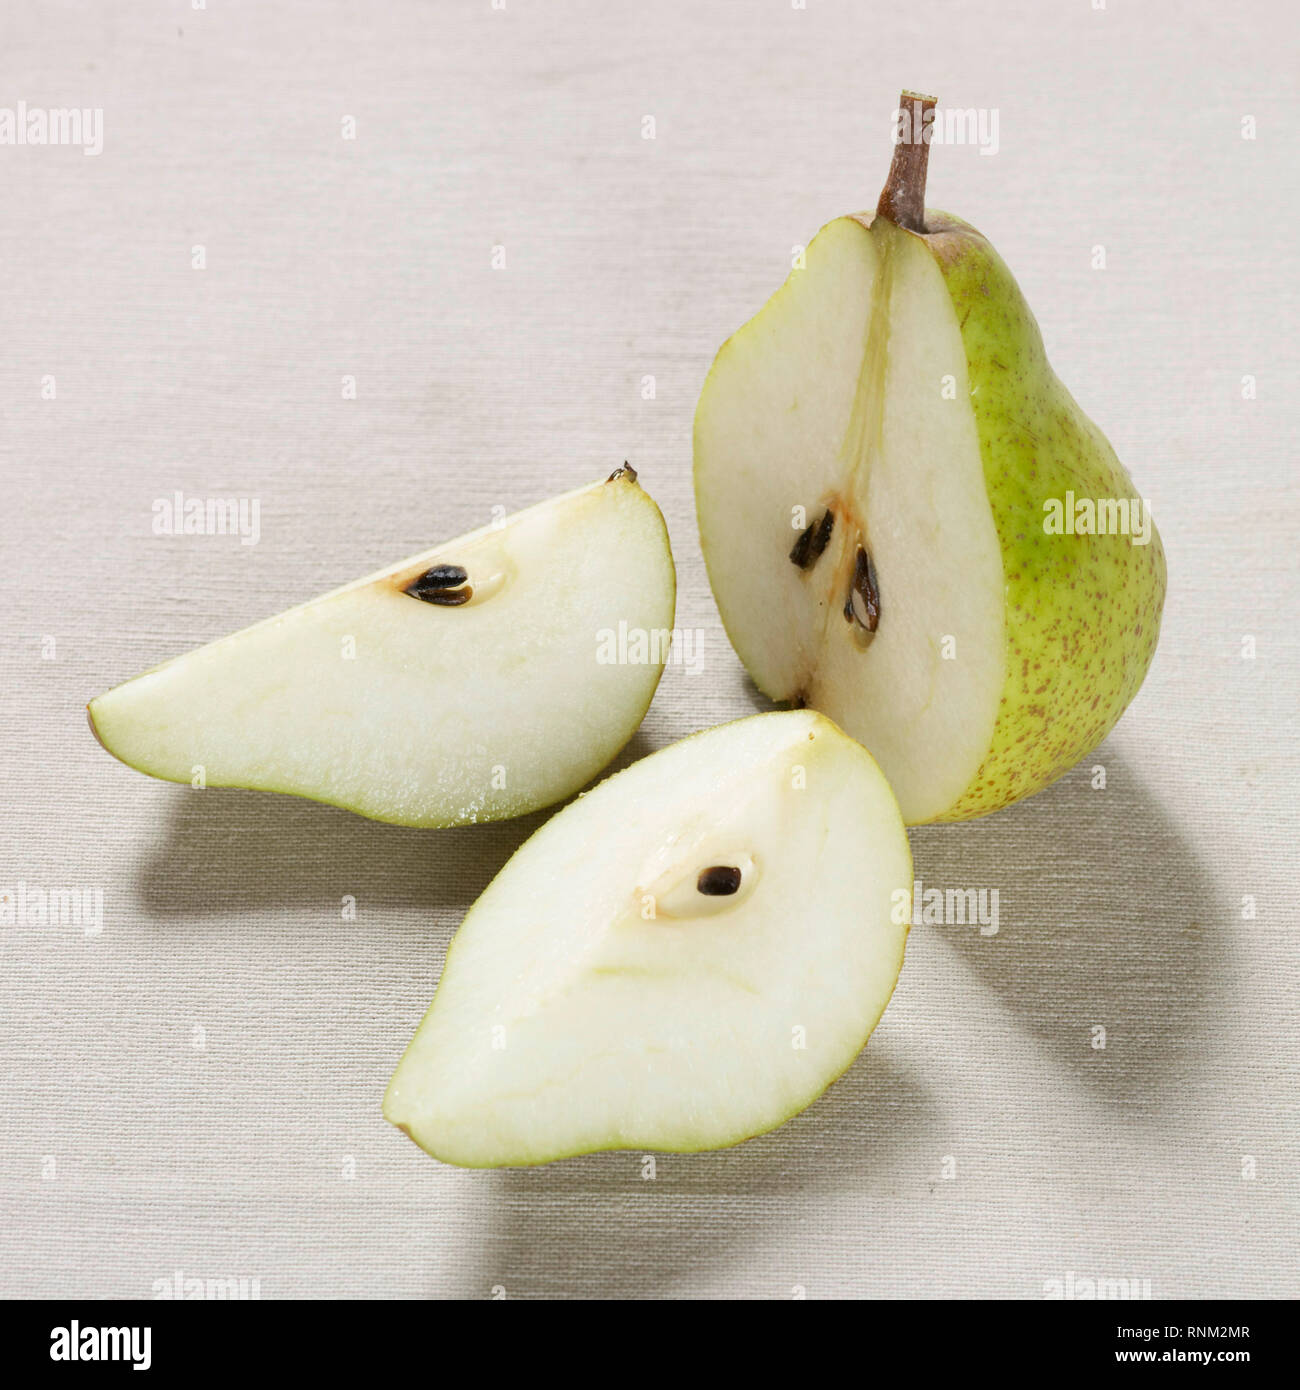 Pera común europeo, peral (Pyrus communis), fruta madura, reducido a la mitad. Studio picture contra un fondo blanco. Foto de stock